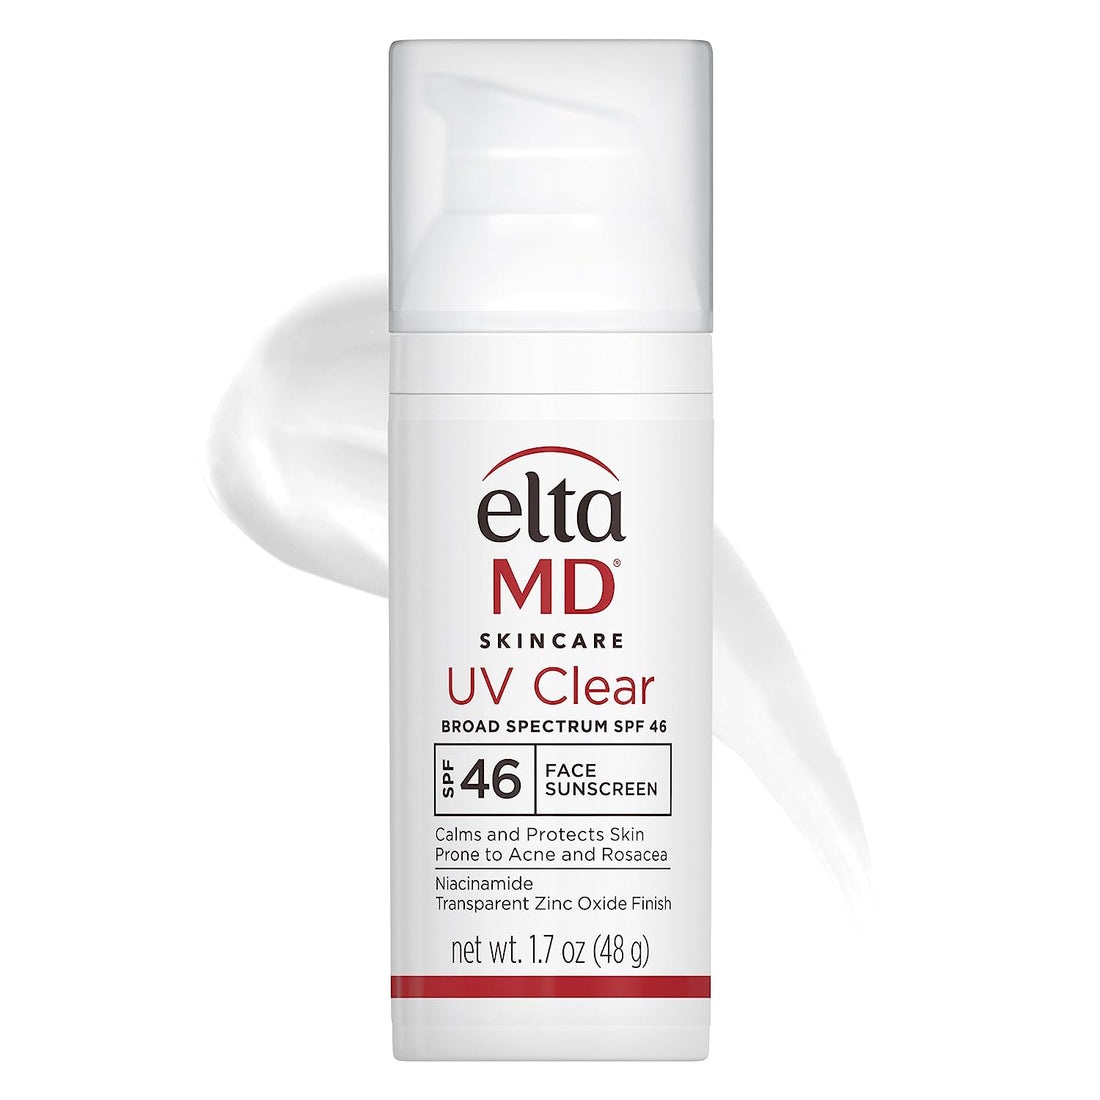 EltaMD UV Clear Broad-Spectrum SPF 46 Sunscreen